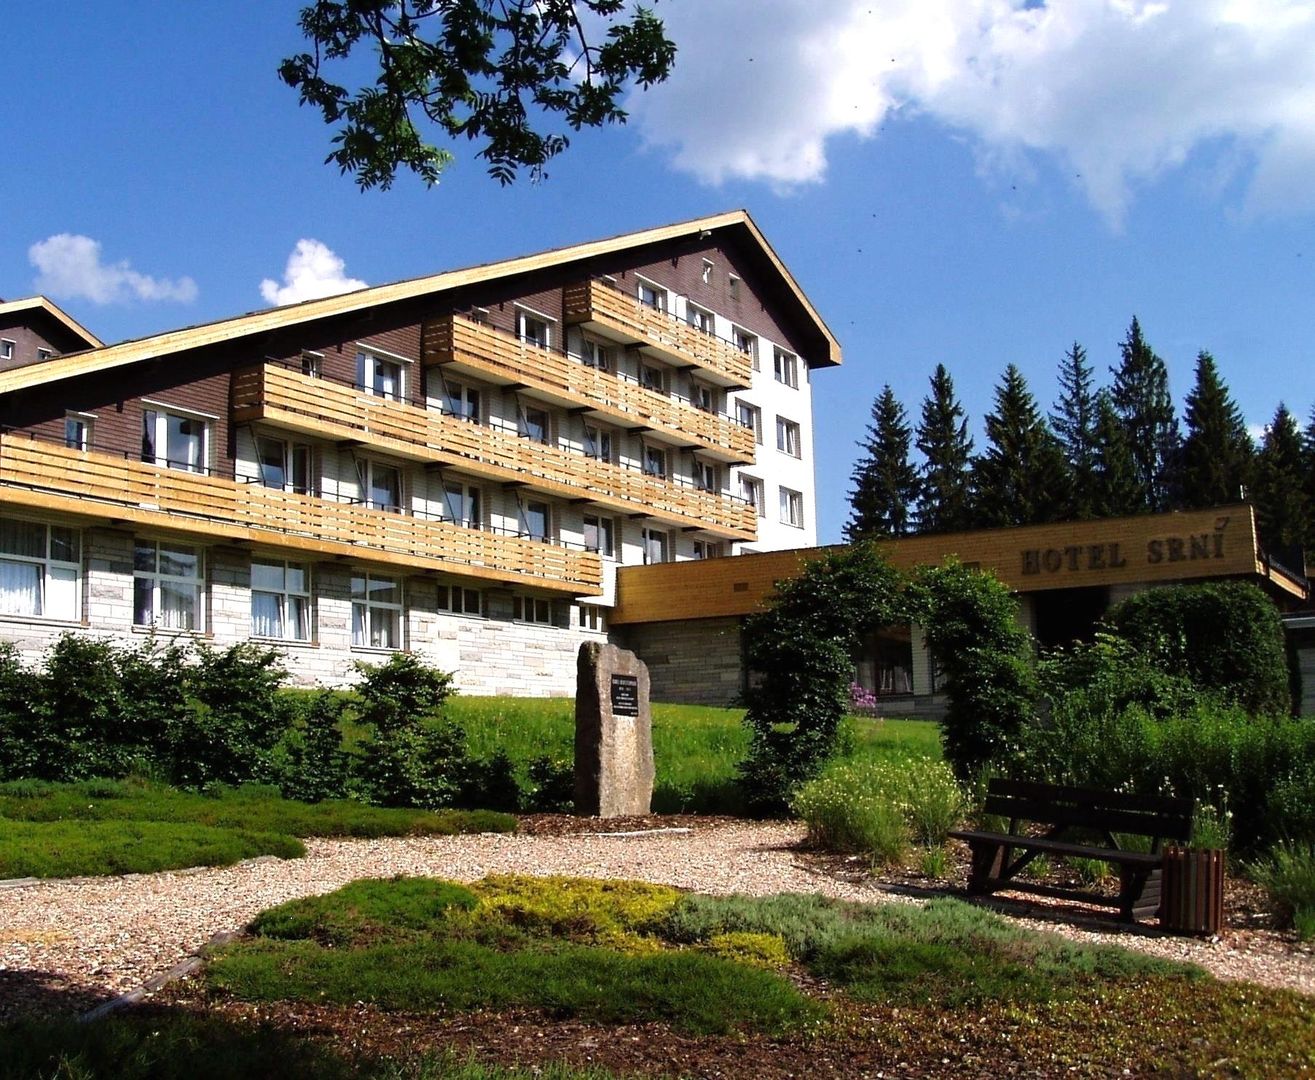 Hotel Srni in Böhmerwald, Hotel Srni / Tschechien